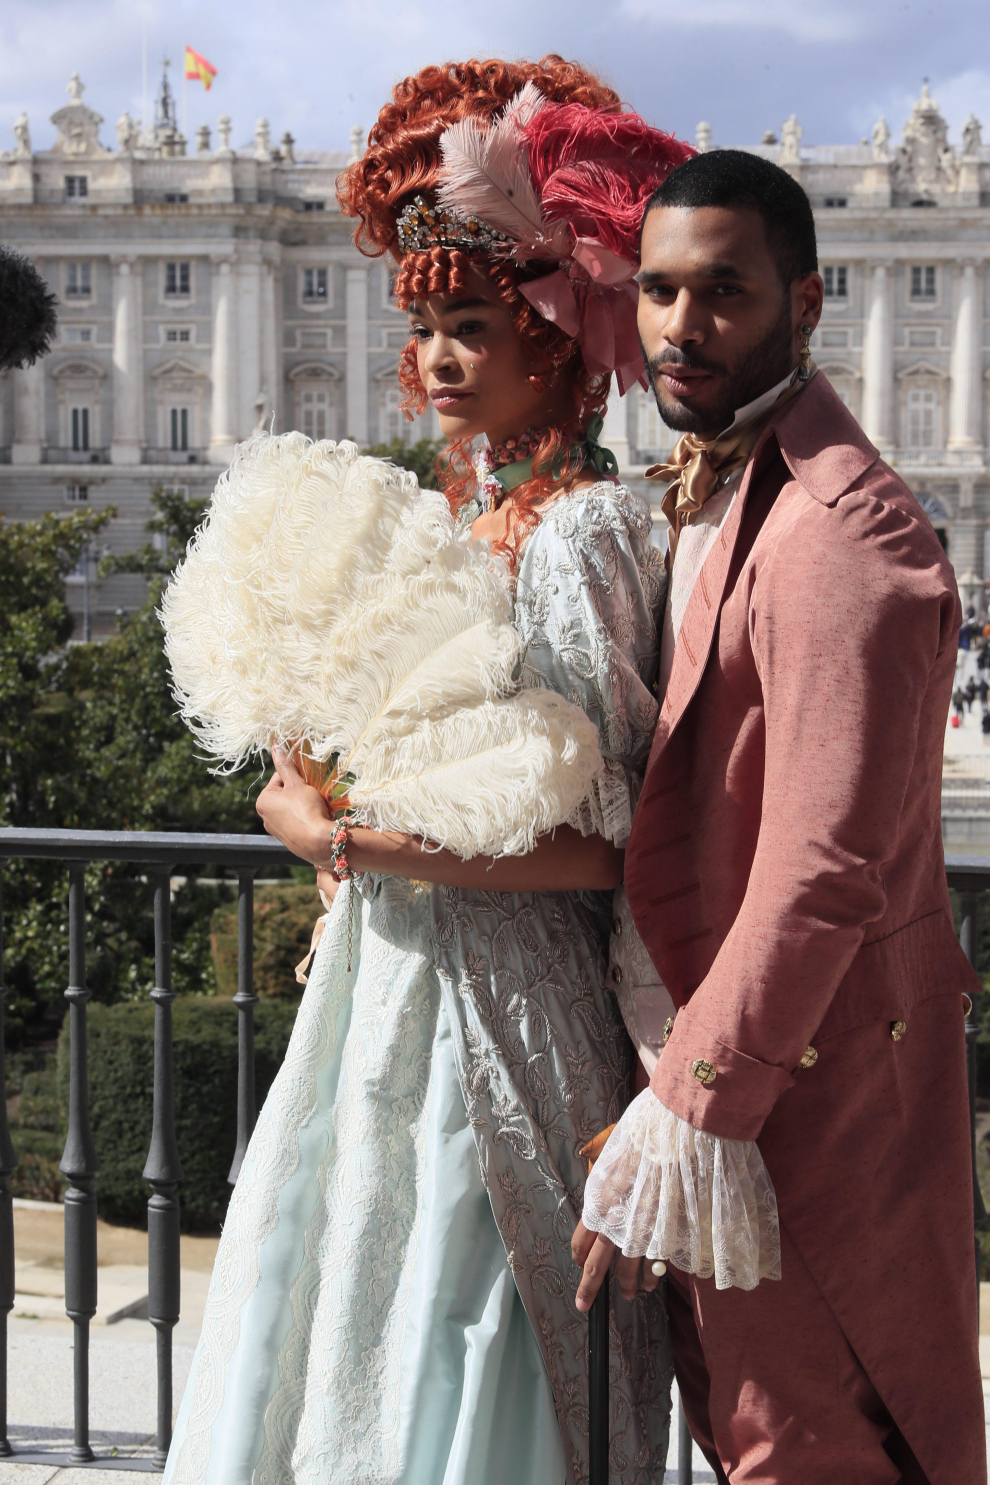 En imágenes | El vestuario de 'Los Bridgerton' visita el Teatro Real en Madrid